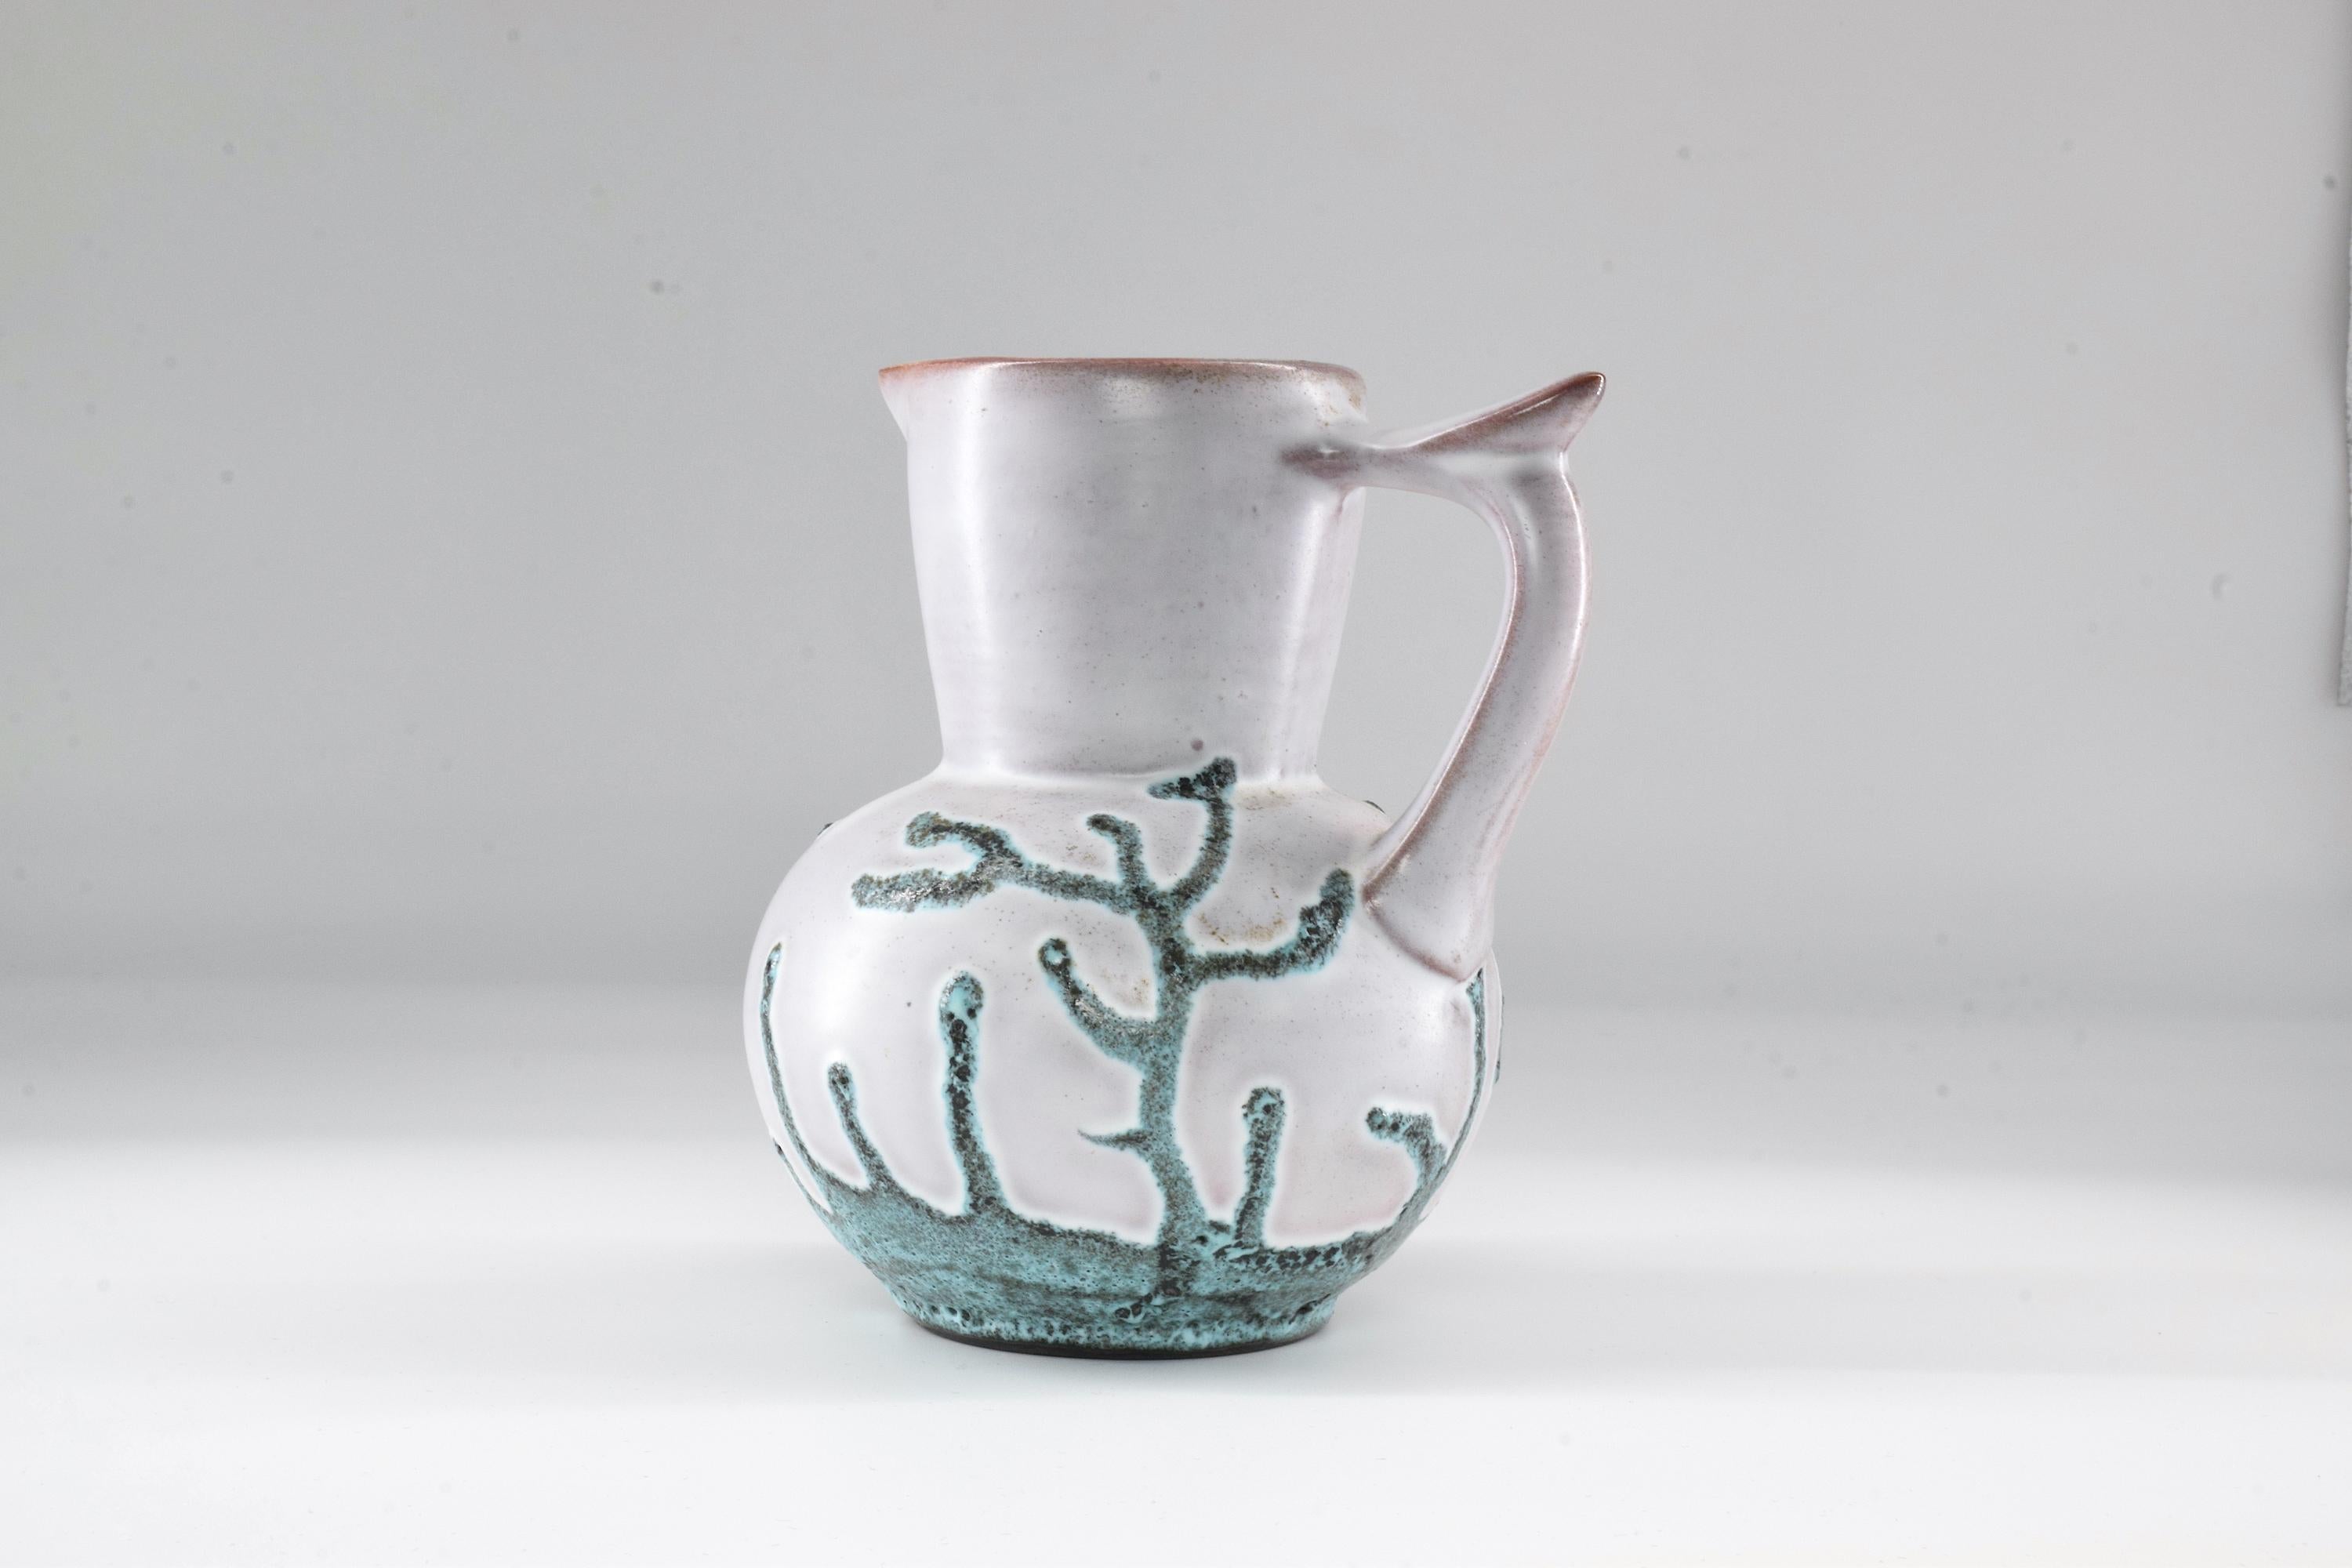 Dies ist ein Original-Keramikkrug, der von dem französischen Designer Bruno Dose für die renommierte Poterie du Breuil entworfen wurde. Ein hübsches Dekorationsobjekt für jeden Wohnbereich, mit seinem weichen Muster aus grünen, korallenartigen